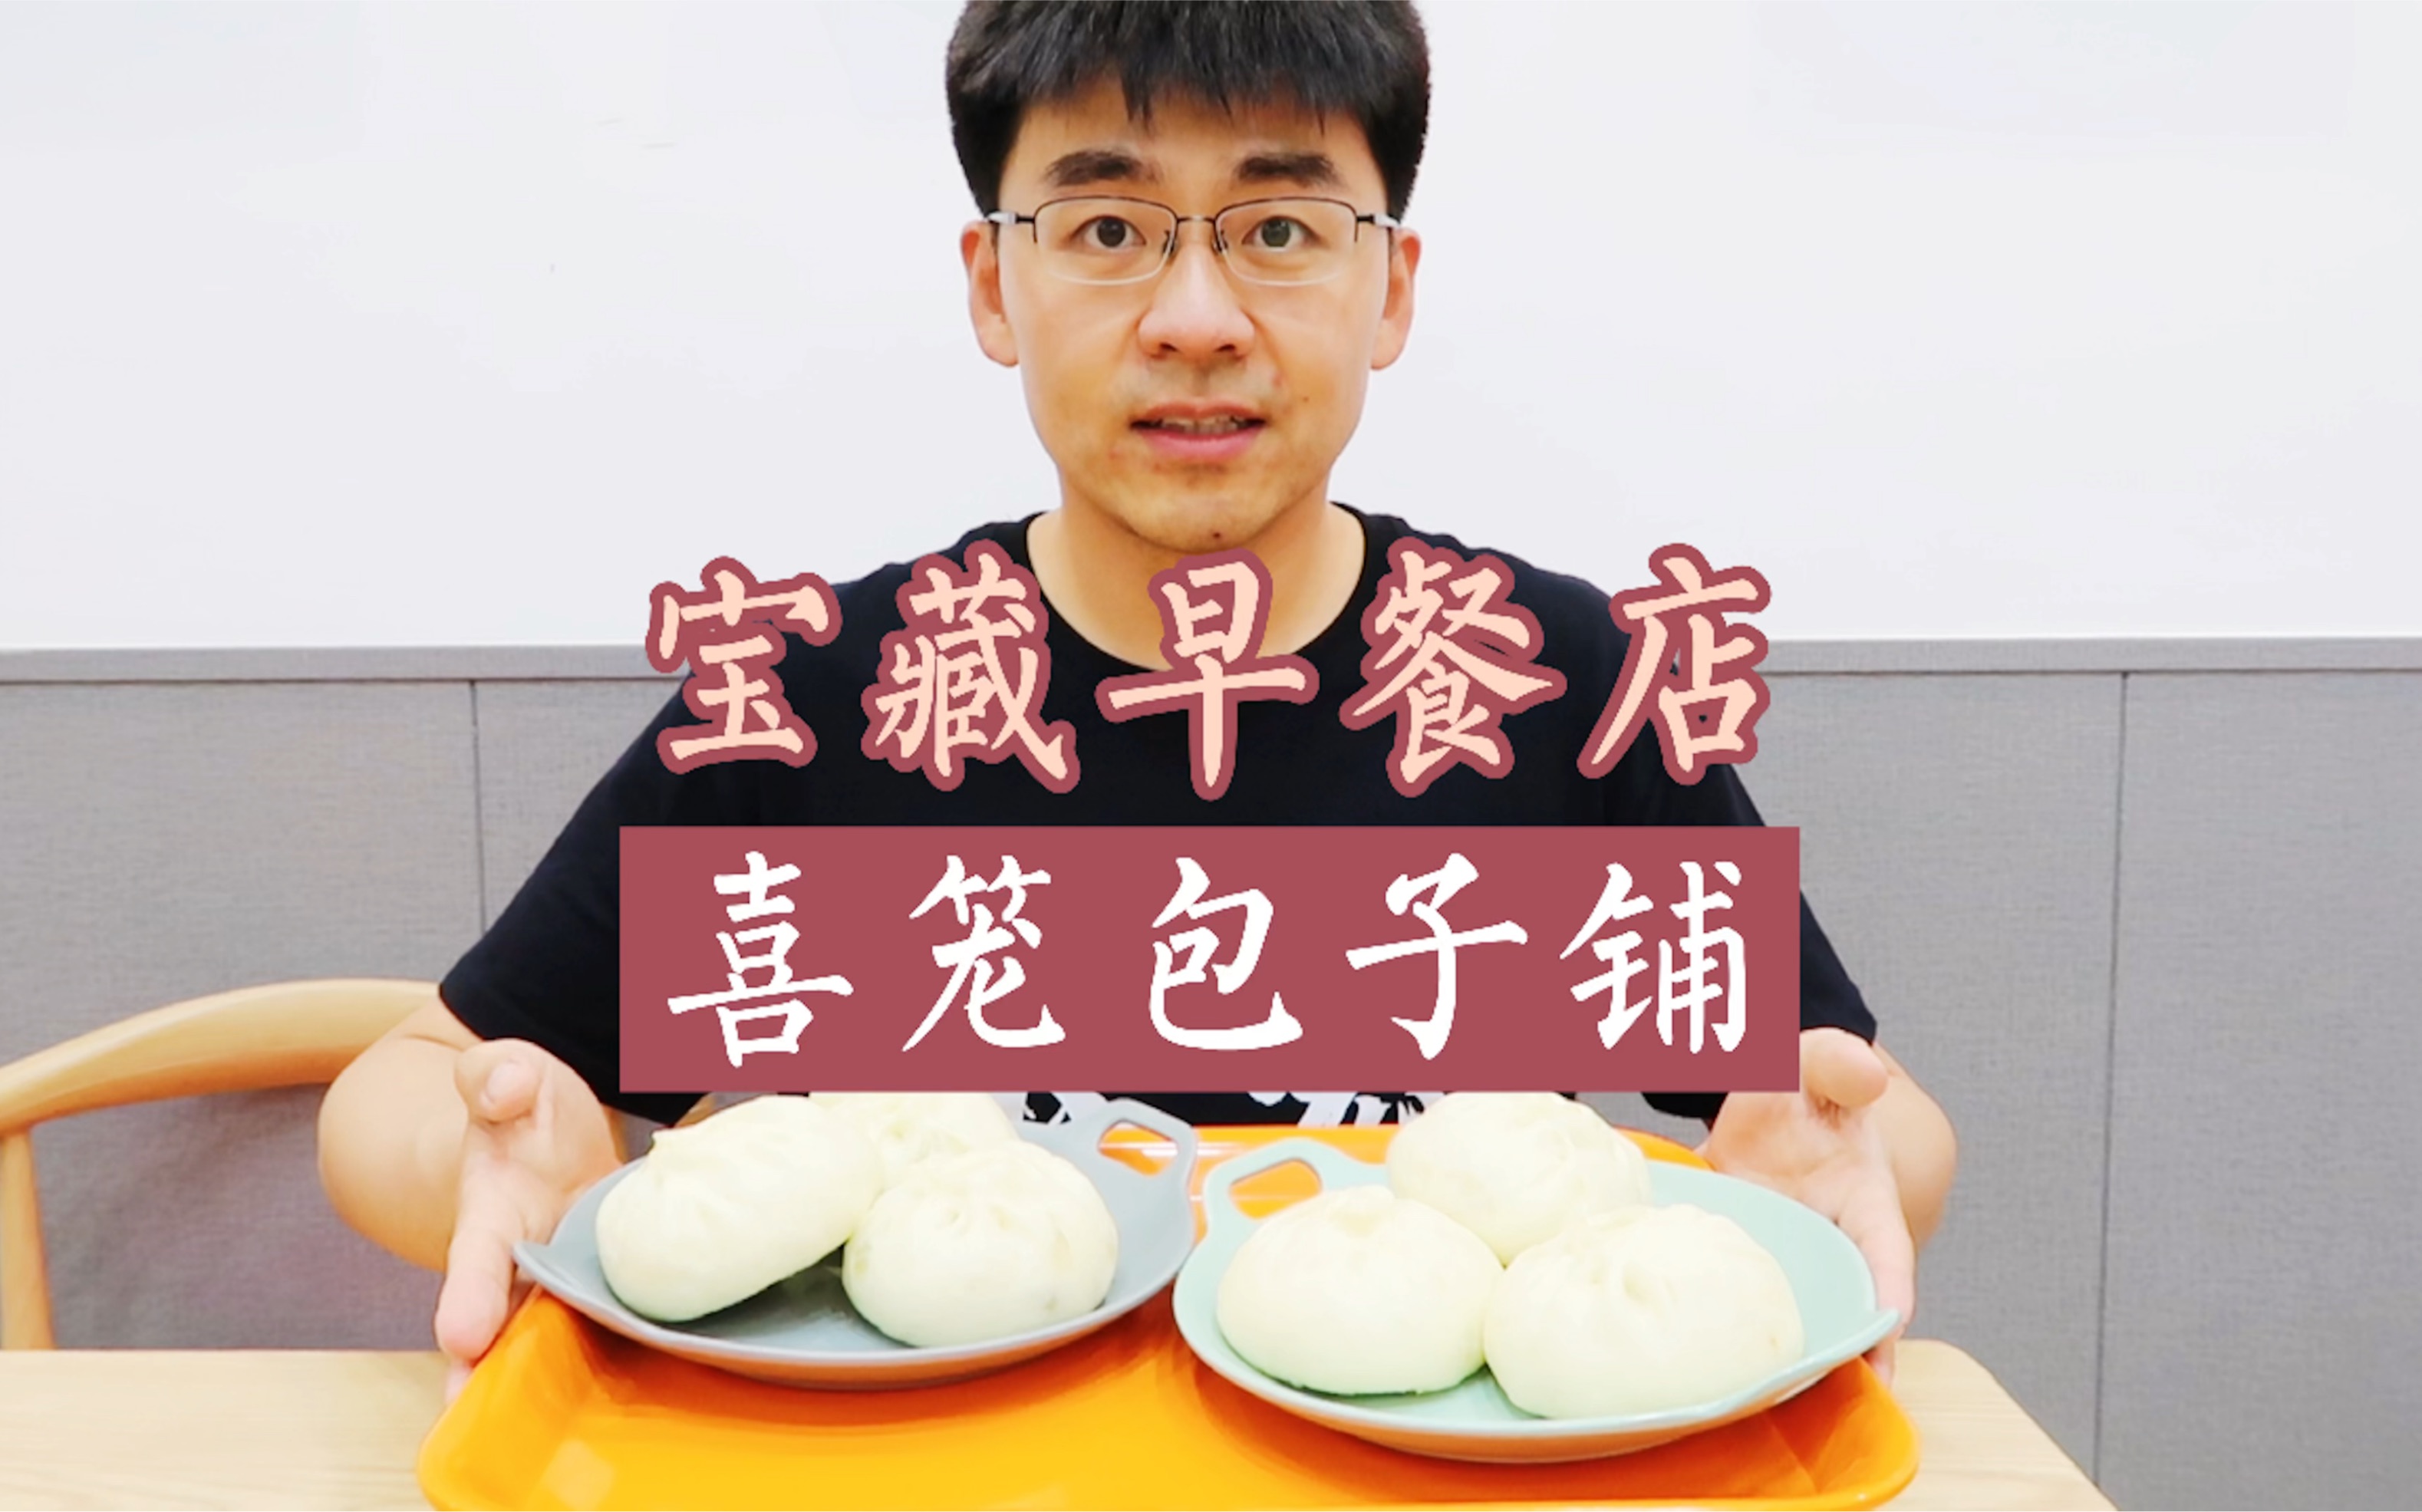 【长宏探店】鲅鱼圈宝藏早餐店——喜笼包子铺